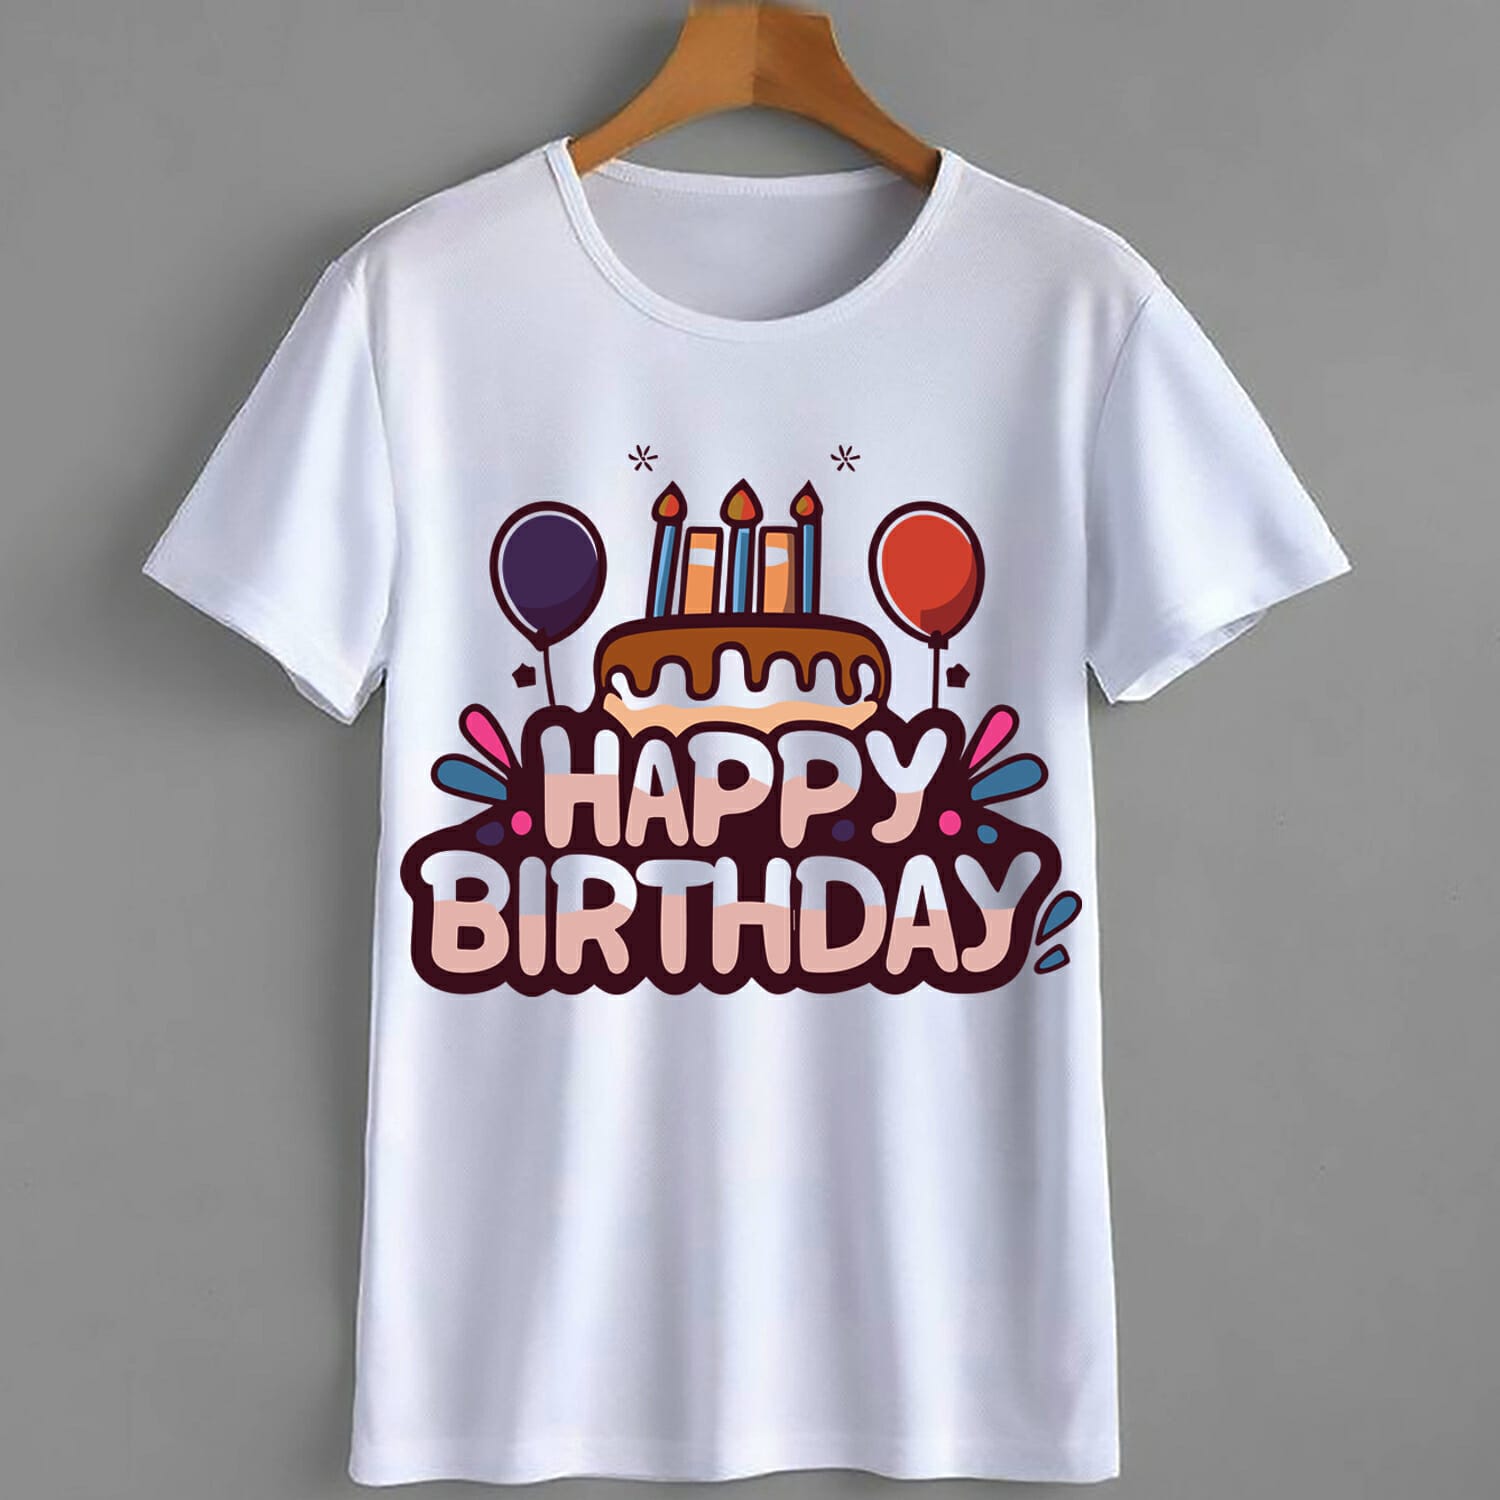 Happy Birthday Cake Kids T-Shirt Design